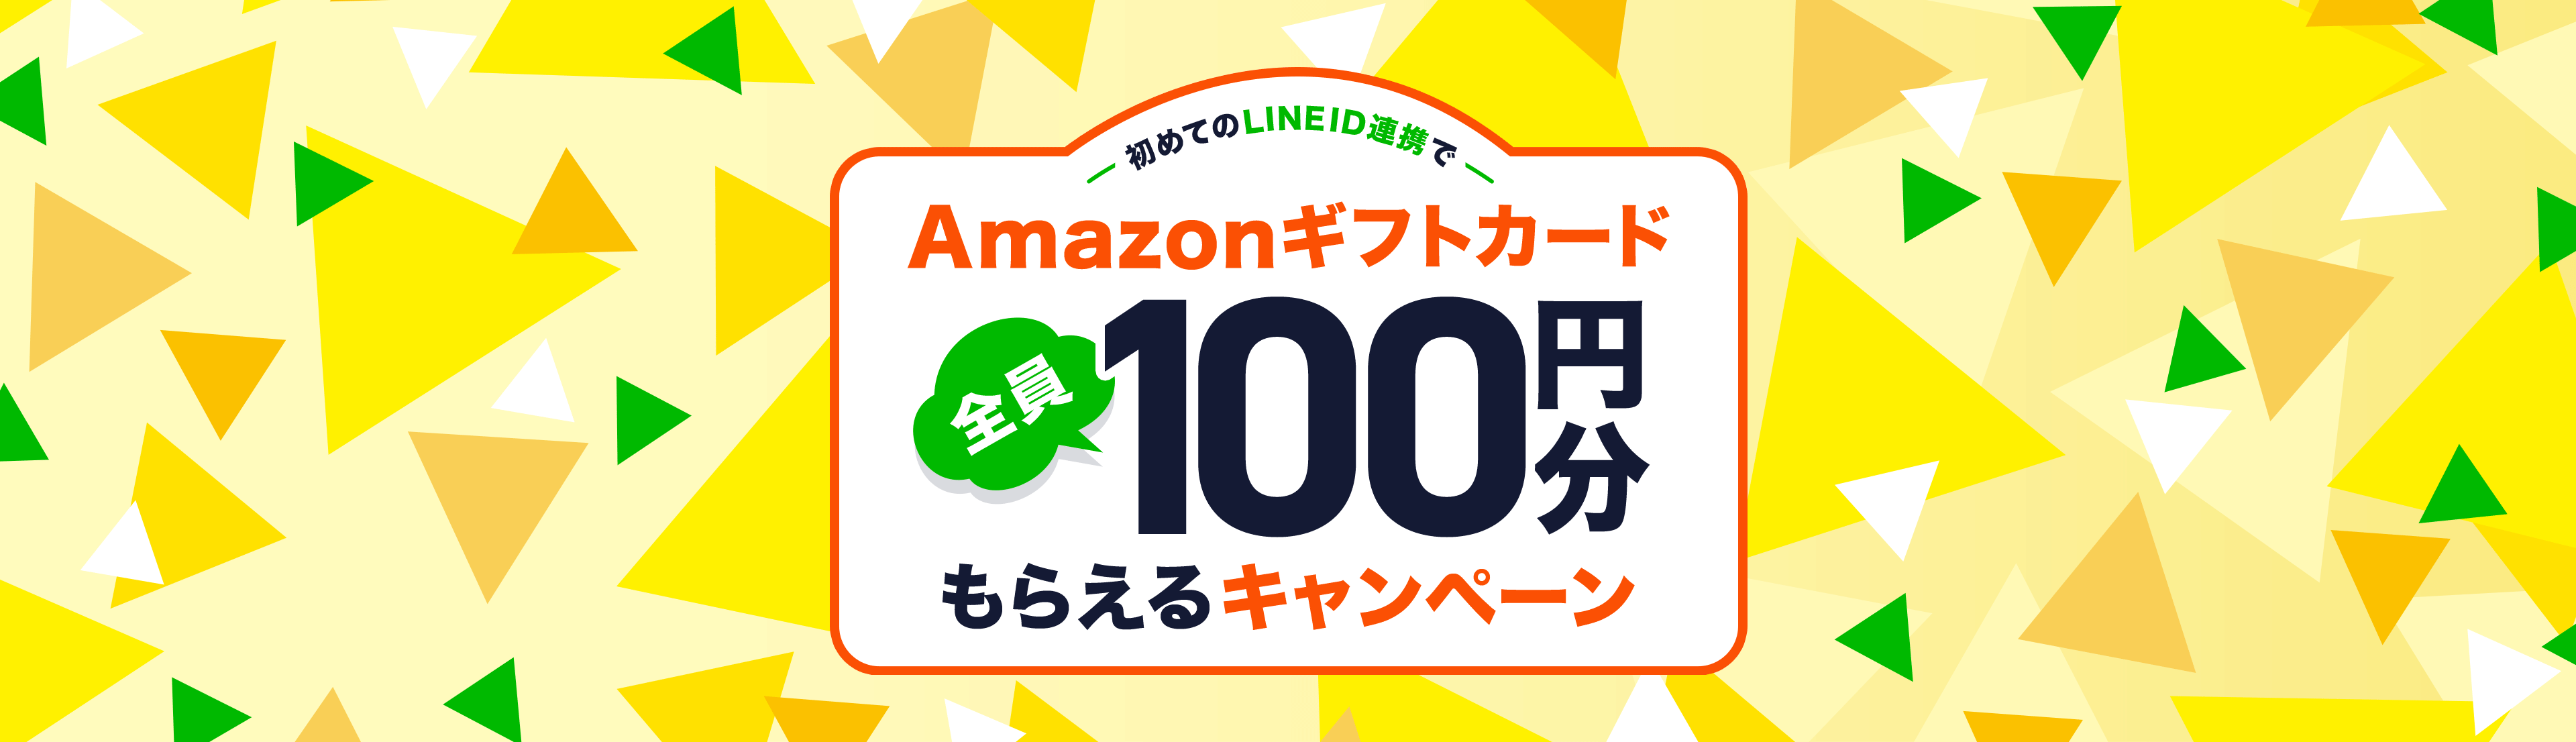 初めてのLINE ID連携でAmazonギフト券全員100円分もらえるキャンペーン